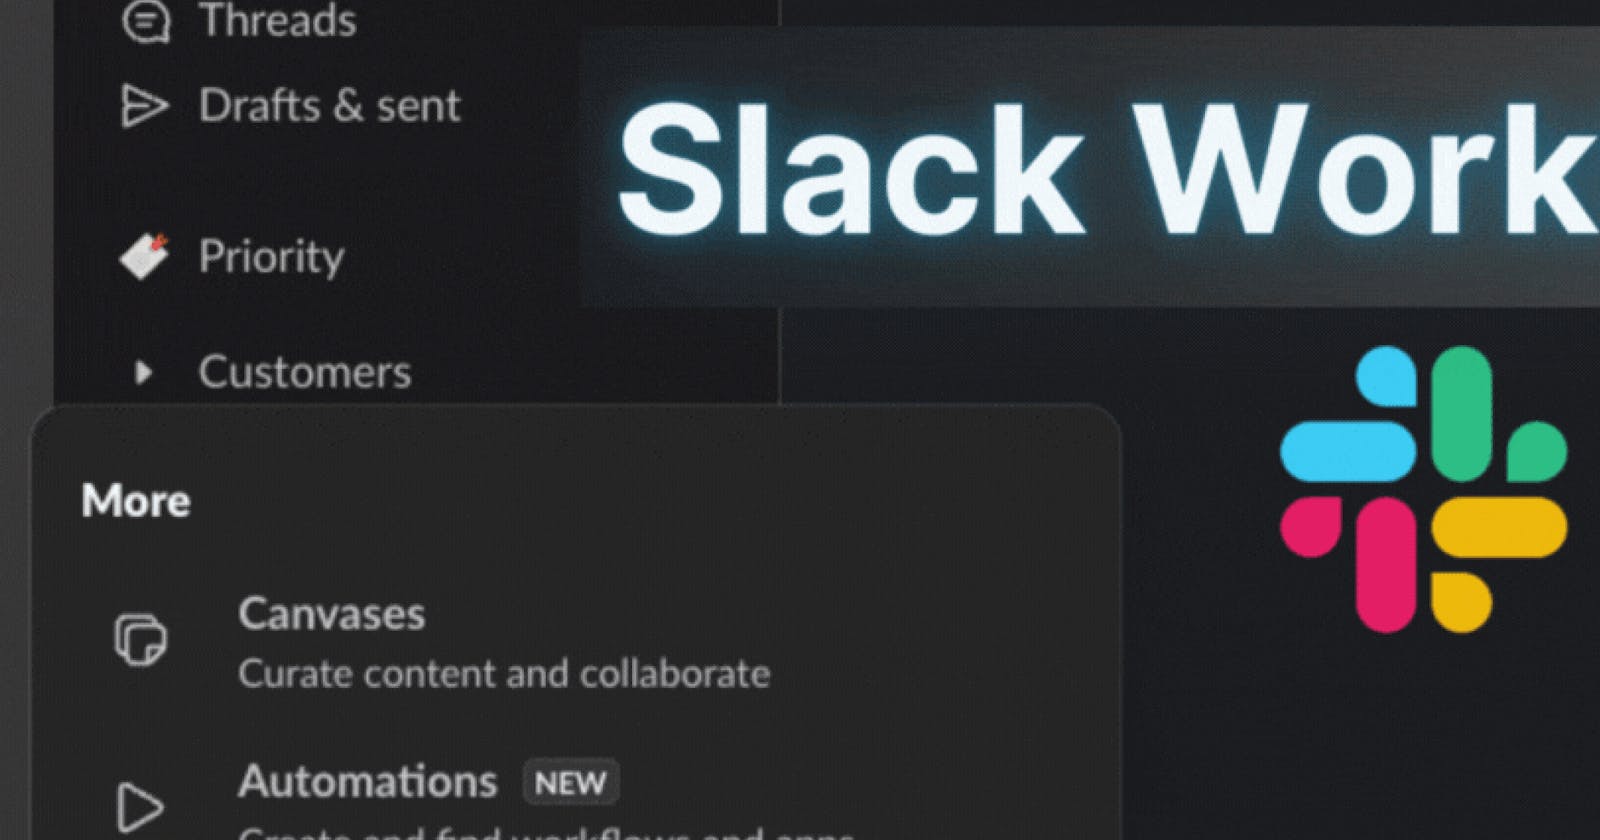 Slack Workflow Builder: Send Messages in 2 Simple Steps